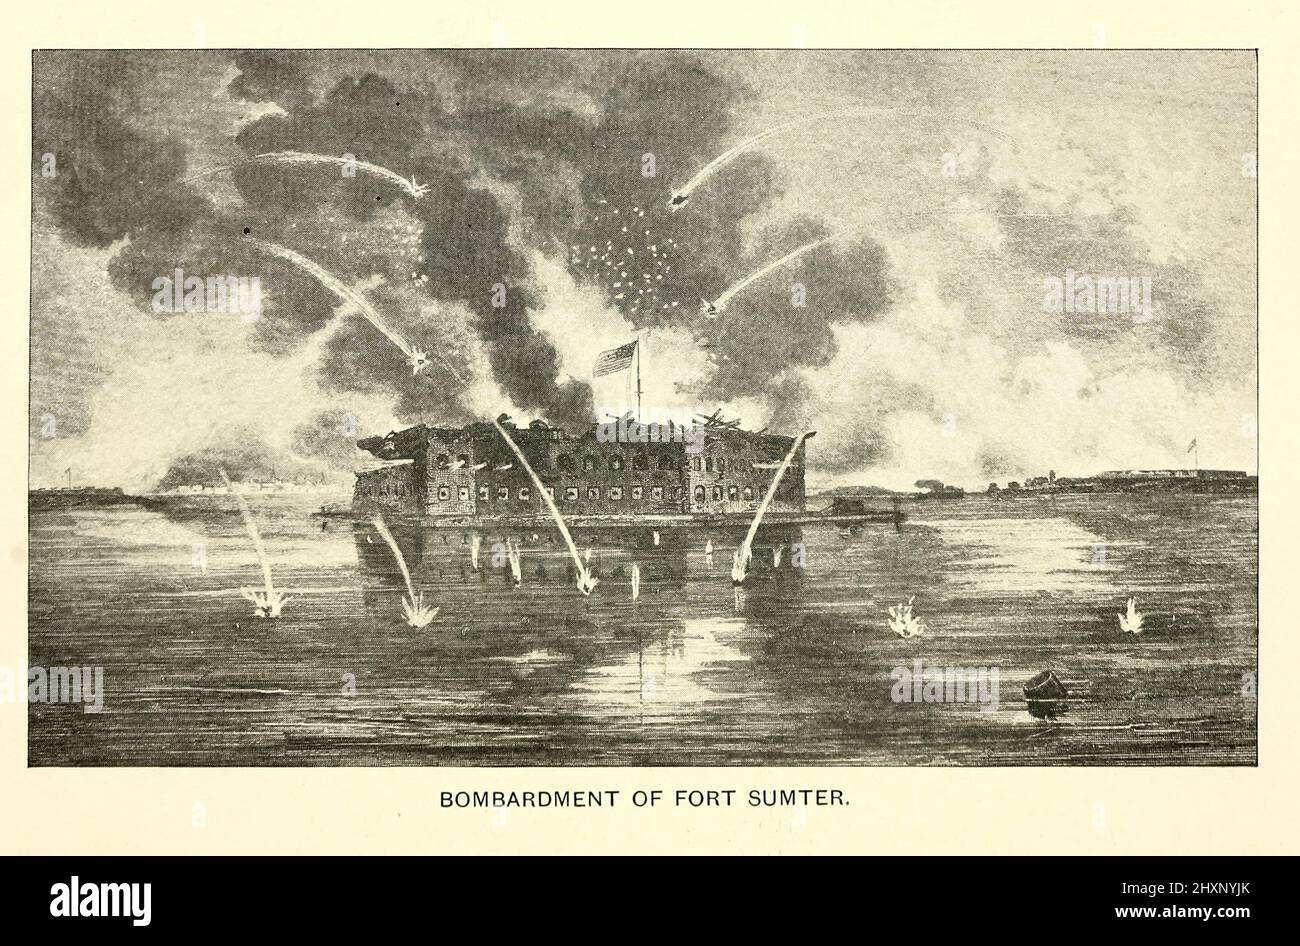 Bombardement du fort Sumter 1861. Fort Sumter est un fort marin construit sur une île artificielle protégeant Charleston, Caroline du Sud contre l'invasion navale. Son origine remonte à la guerre de 1812 lorsque les Britanniques ont envahi Washington par la mer. Elle était encore incomplète en 1861, lorsque la bataille de fort Sumter commença la guerre civile américaine. Il a été gravement endommagé pendant la guerre, laissé en ruines, et bien qu'il y ait eu une certaine reconstruction, le fort tel que conçu n'a jamais été achevé. Du livre ' Angels du champ de bataille : Une histoire des labeurs des frères catholiques à la fin de la guerre civile ' par George Barton, Pub Banque D'Images